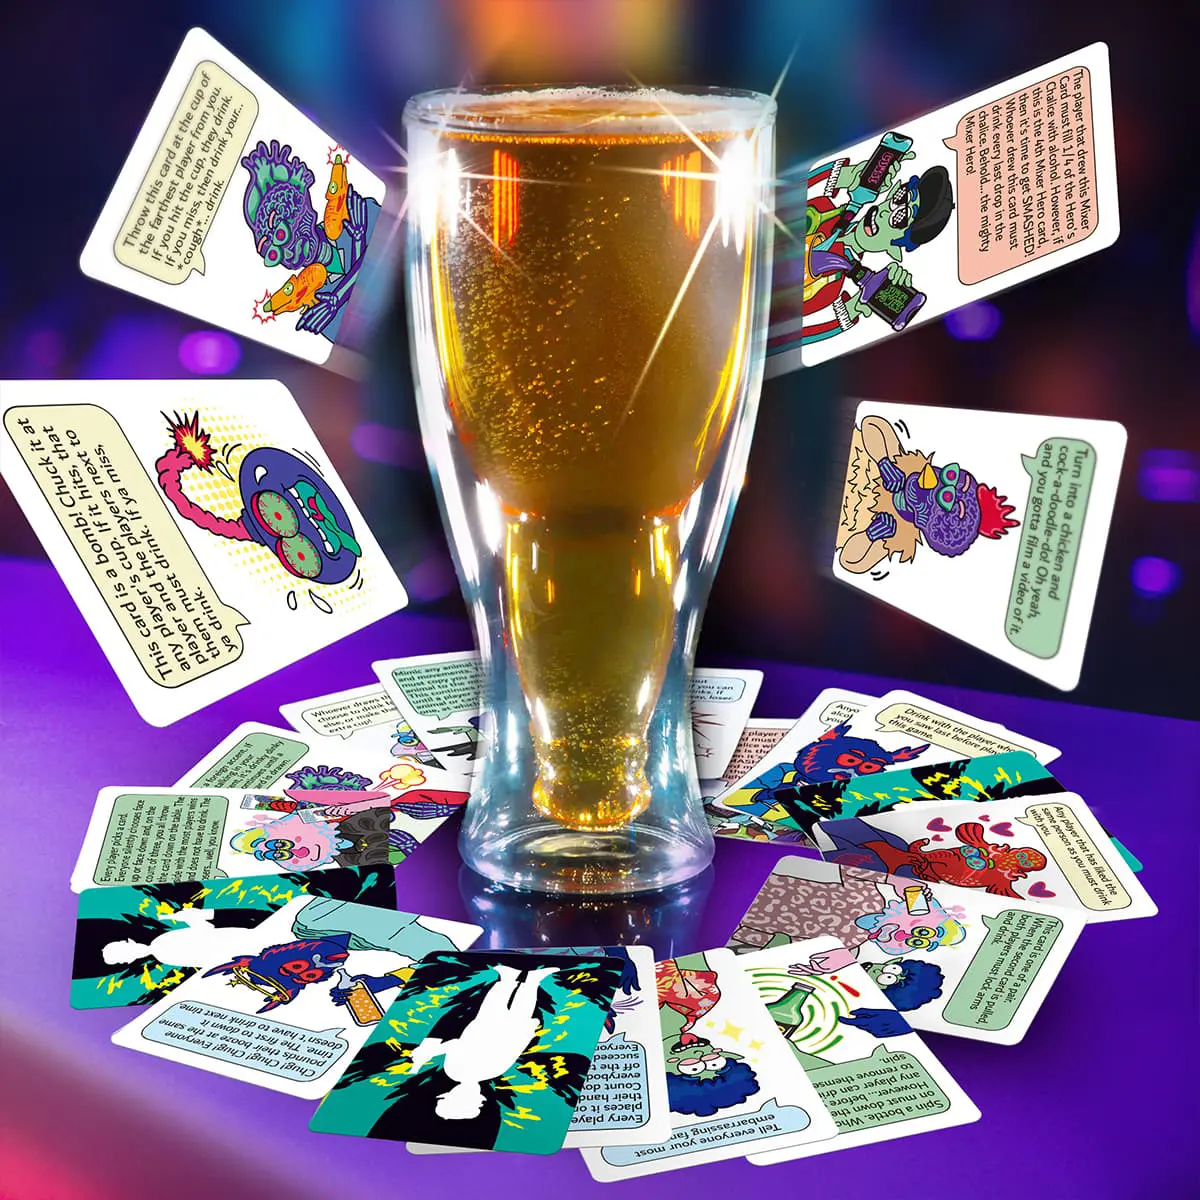 Jogo de cartas para beber Mixer Hero - Festa Rave